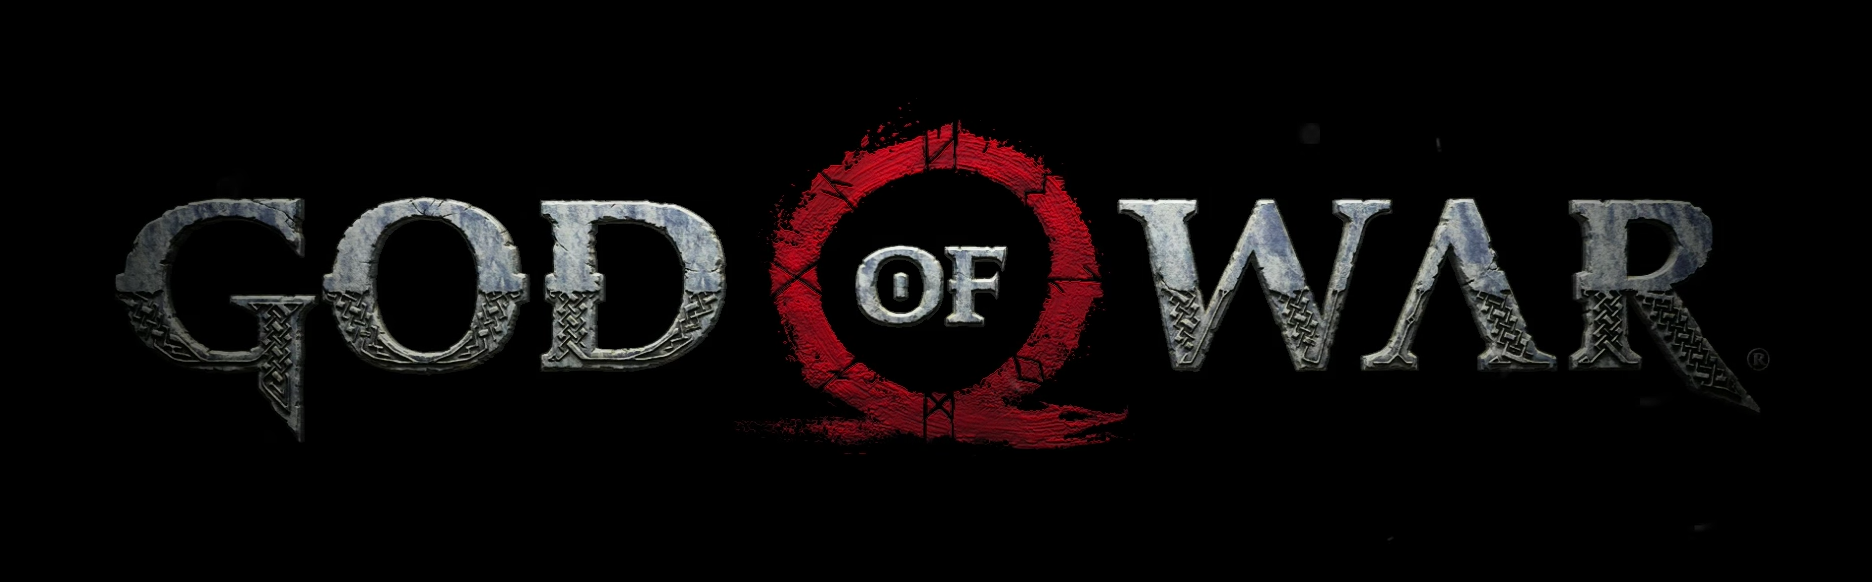 Nuevo God of war, antes de juzgarlo entérate aquí de porqué Kratos ha cambiado y conoce los secretos ocultos del vídeo Gameplay